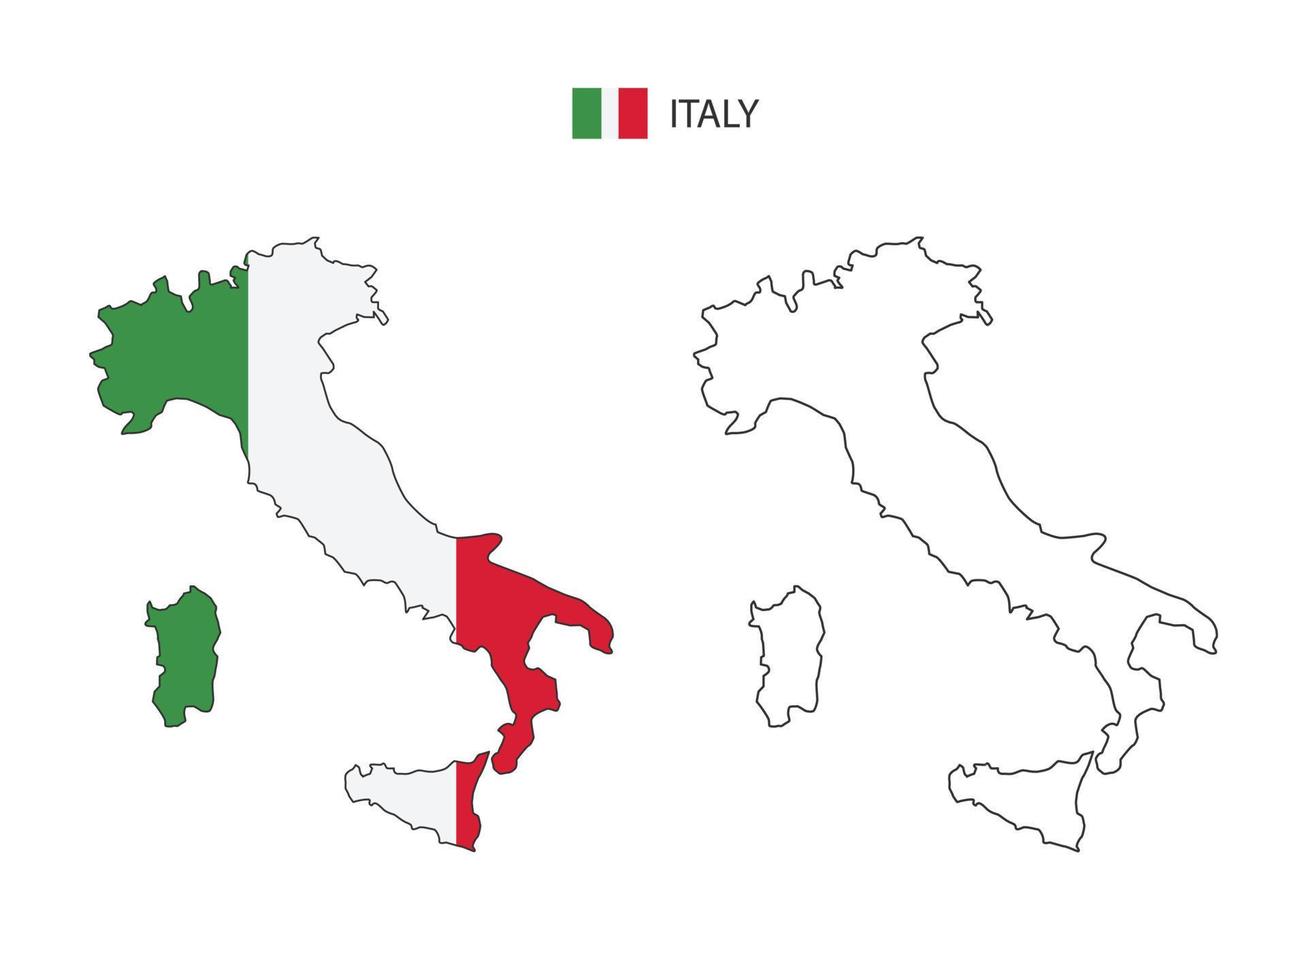 italie carte ville vecteur divisé par style de simplicité de contour. ont 2 versions, la version en ligne fine noire et la couleur de la version du drapeau du pays. les deux cartes étaient sur fond blanc.